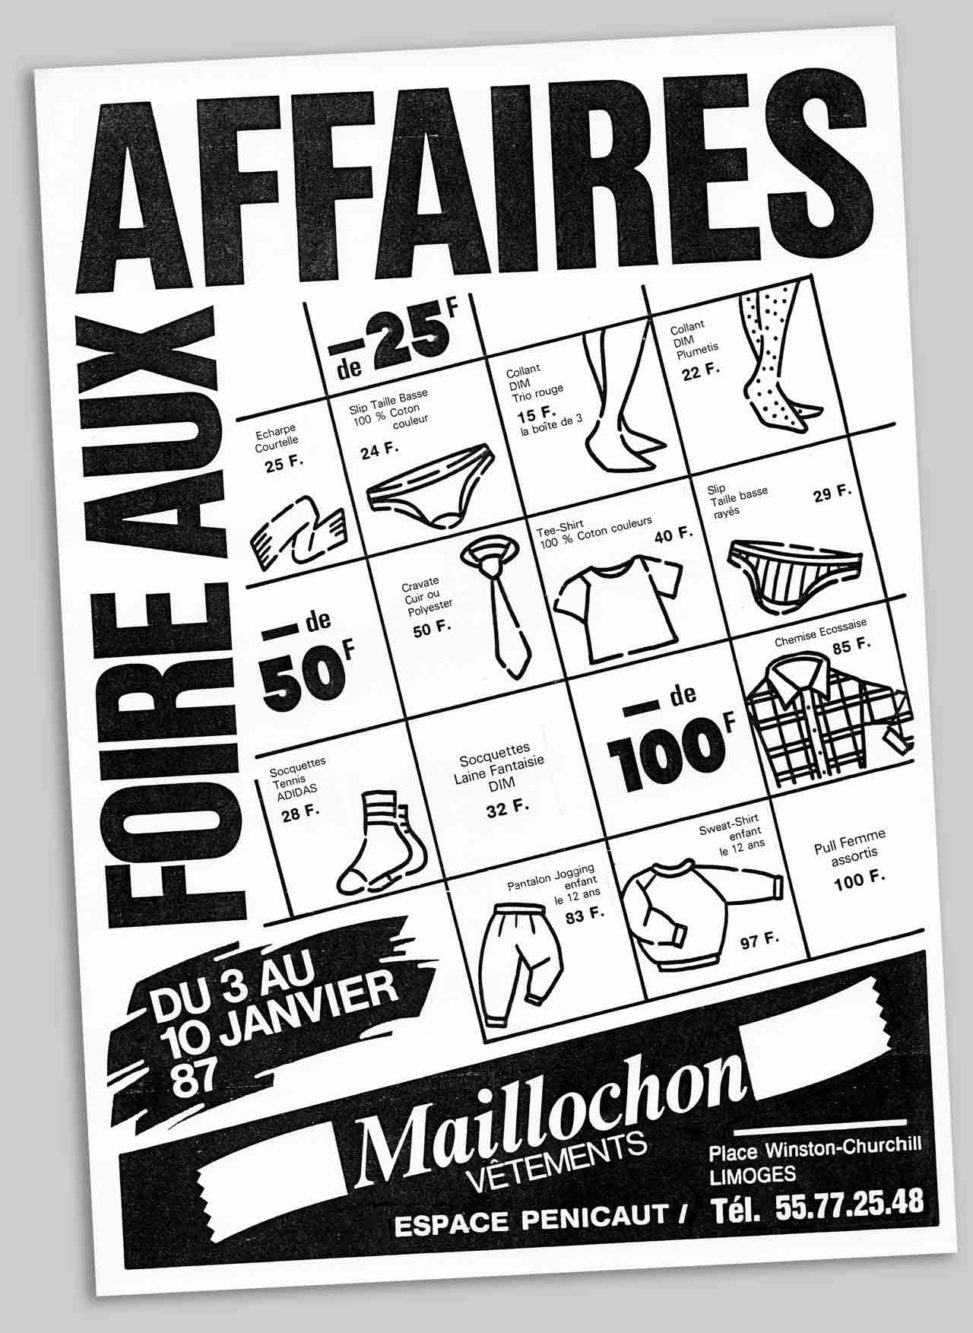 Flyer Foire aux affaires vêtements maillochon Limoges 1987 Marc-André